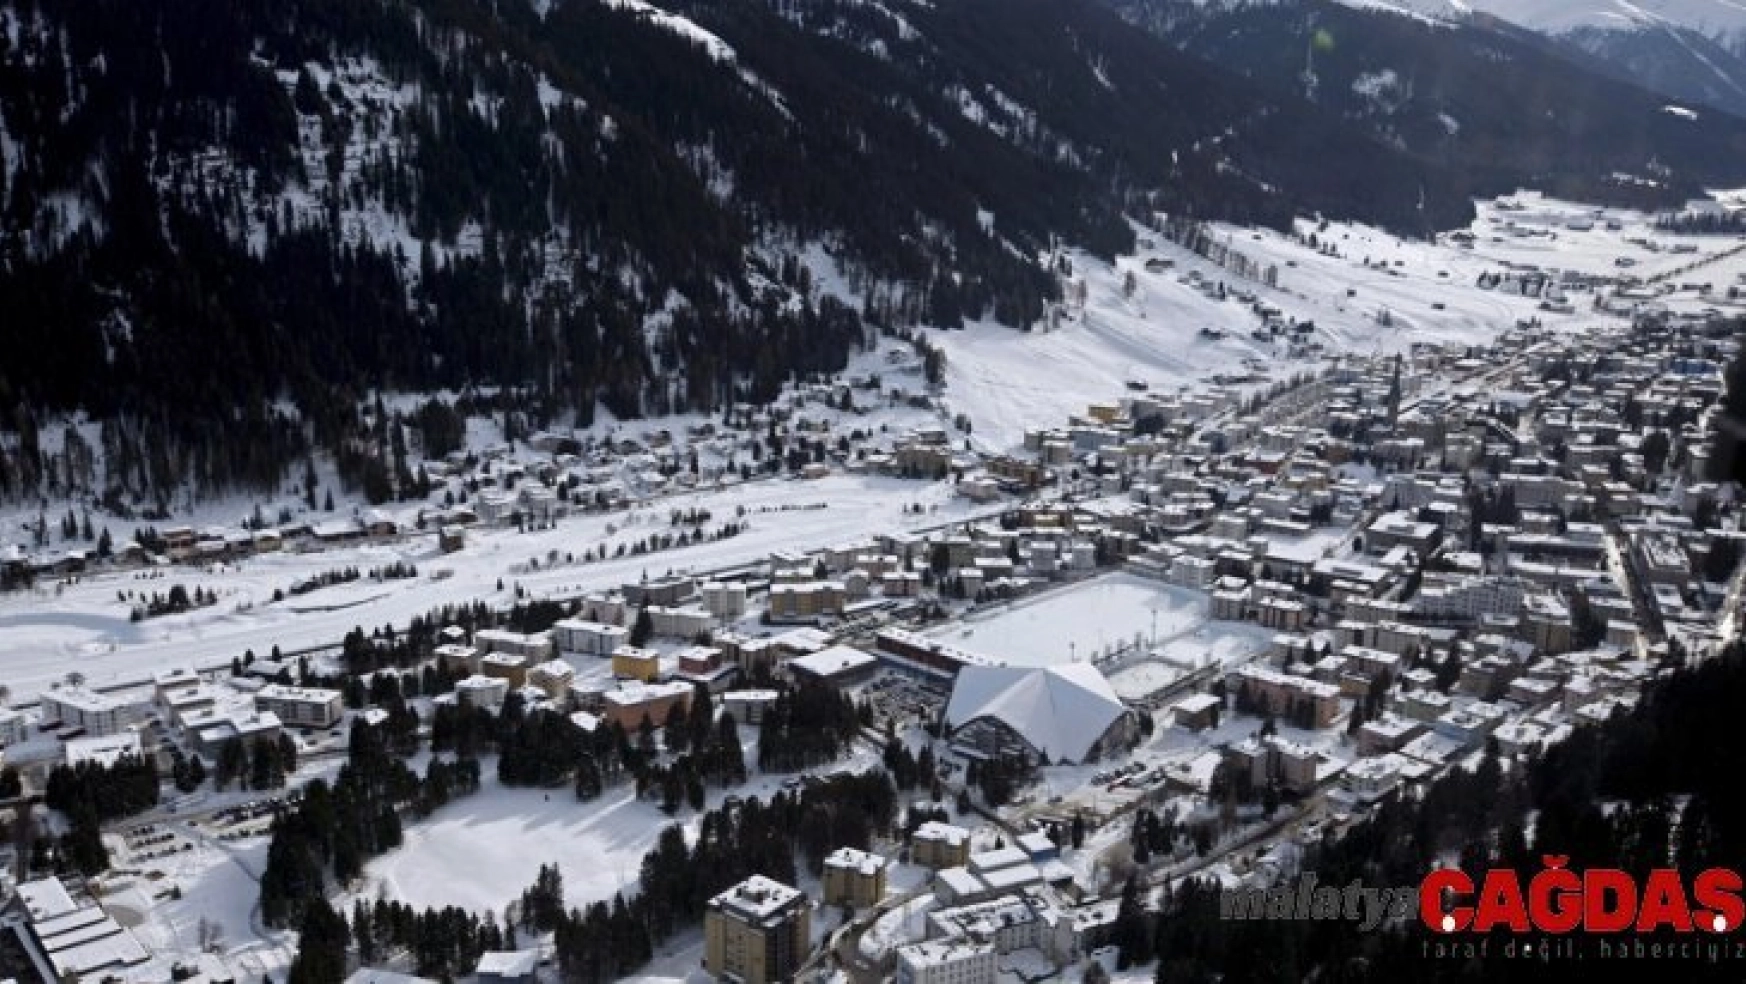 Dünya Ekonomik Forumu'nun düzenleneceği Davos'ta oda fiyatları tavan yaptı